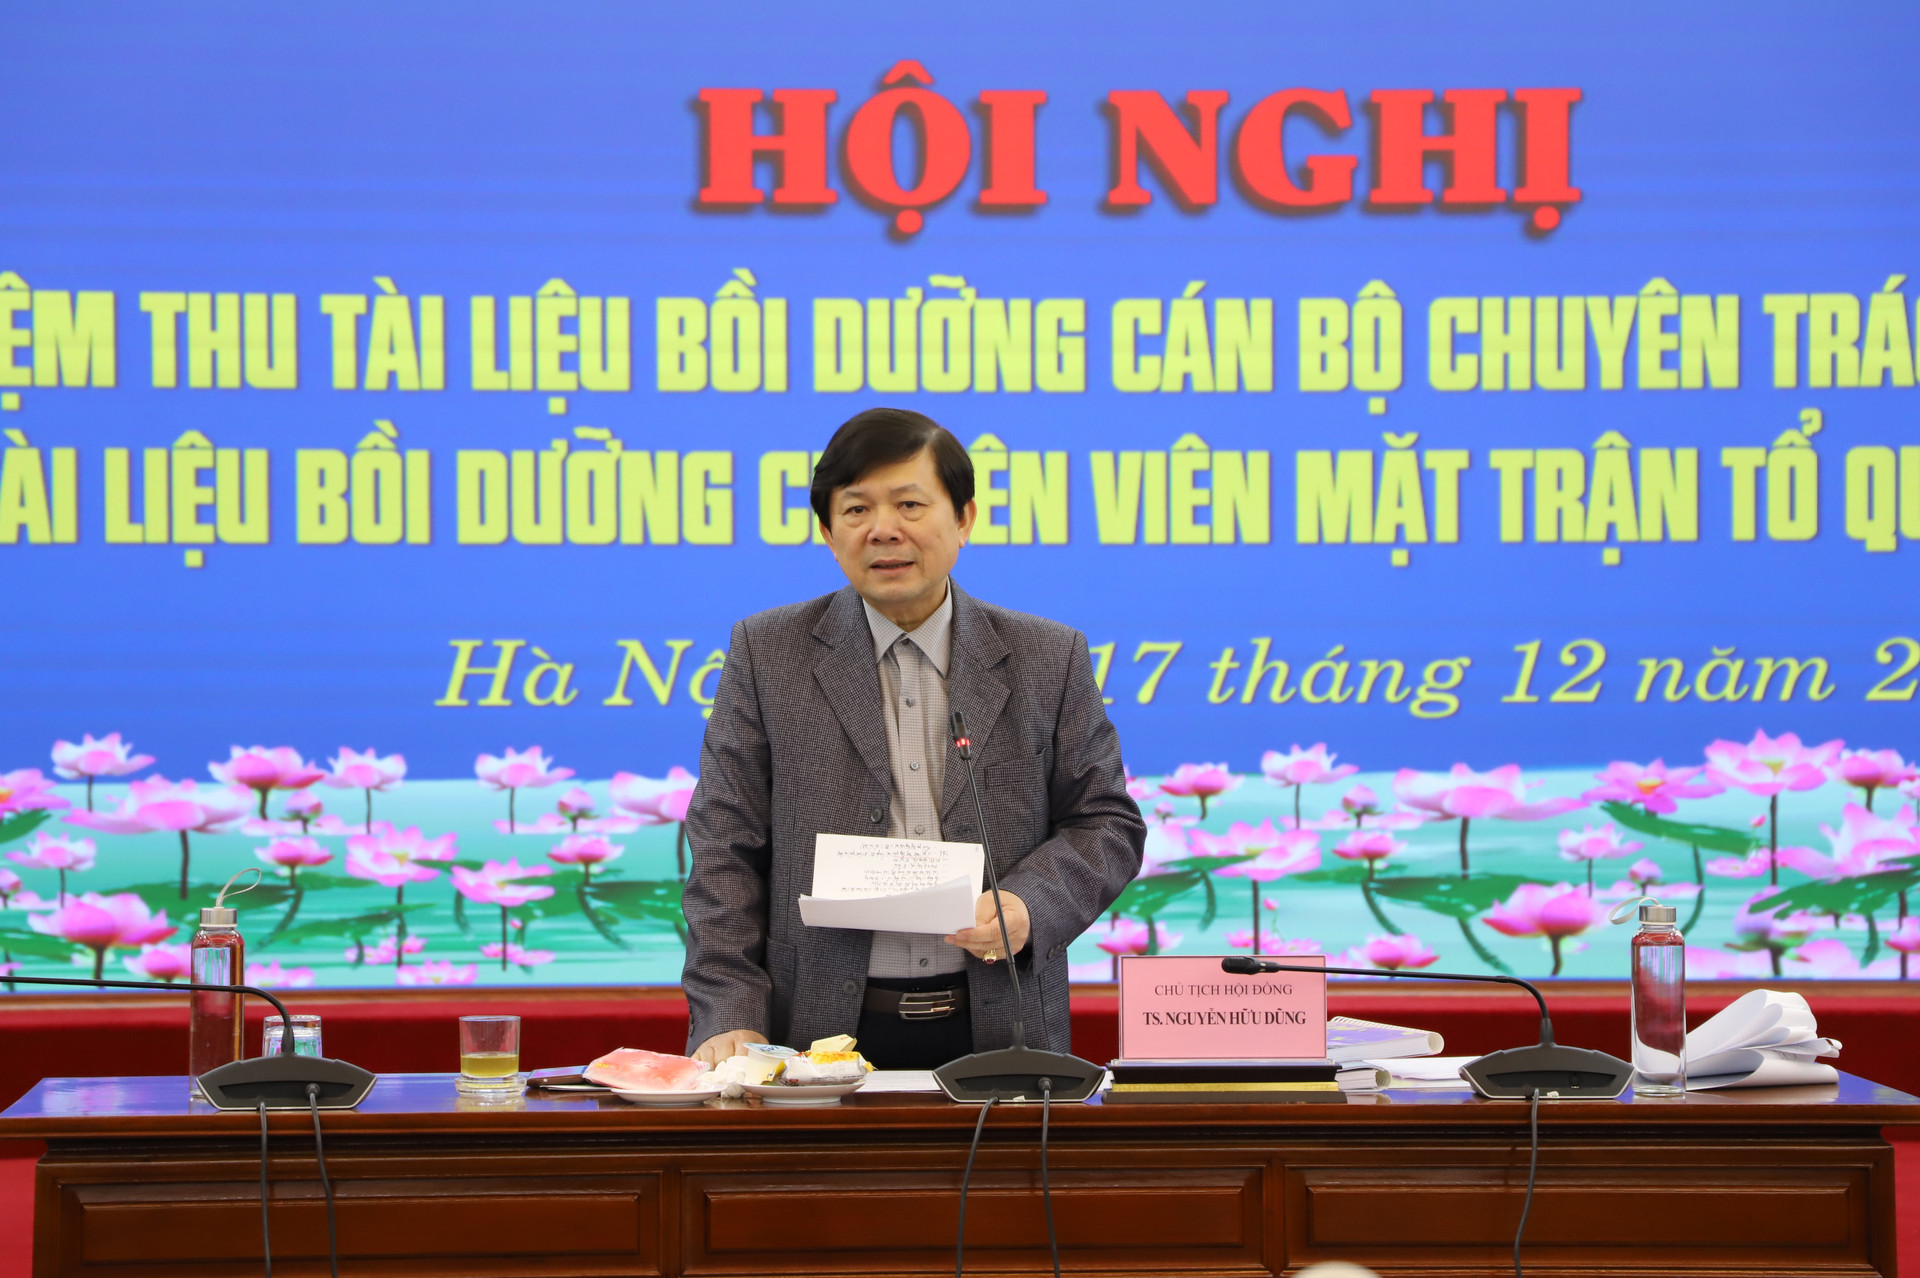 Phó Chủ tịch Nguyễn Hữu Dũng phát biểu tại hội nghị.